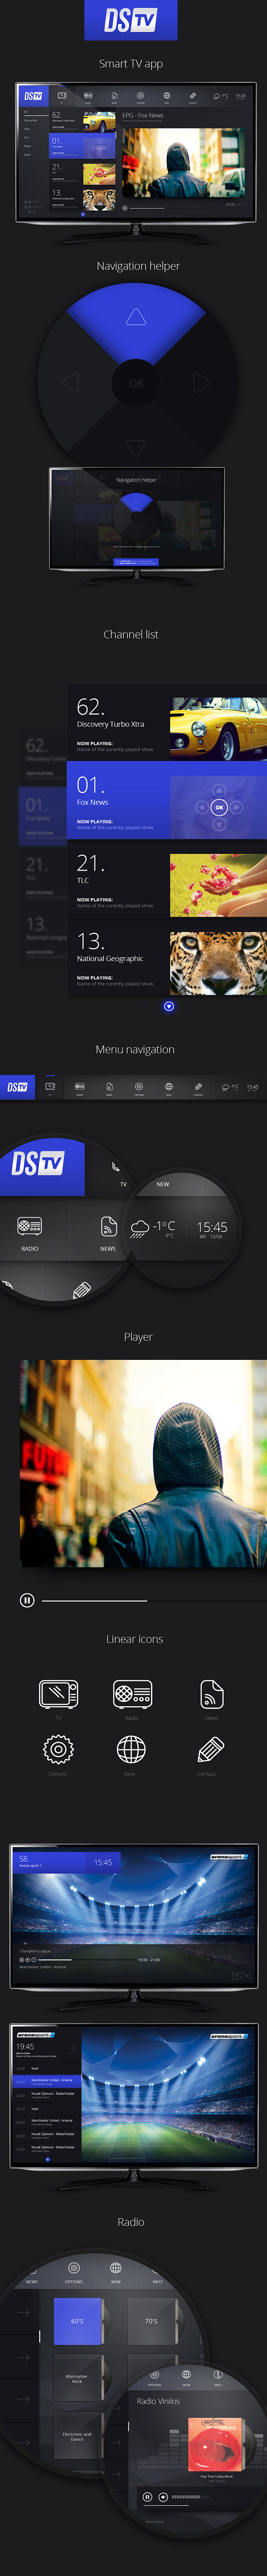 DSTV TV App : Design...